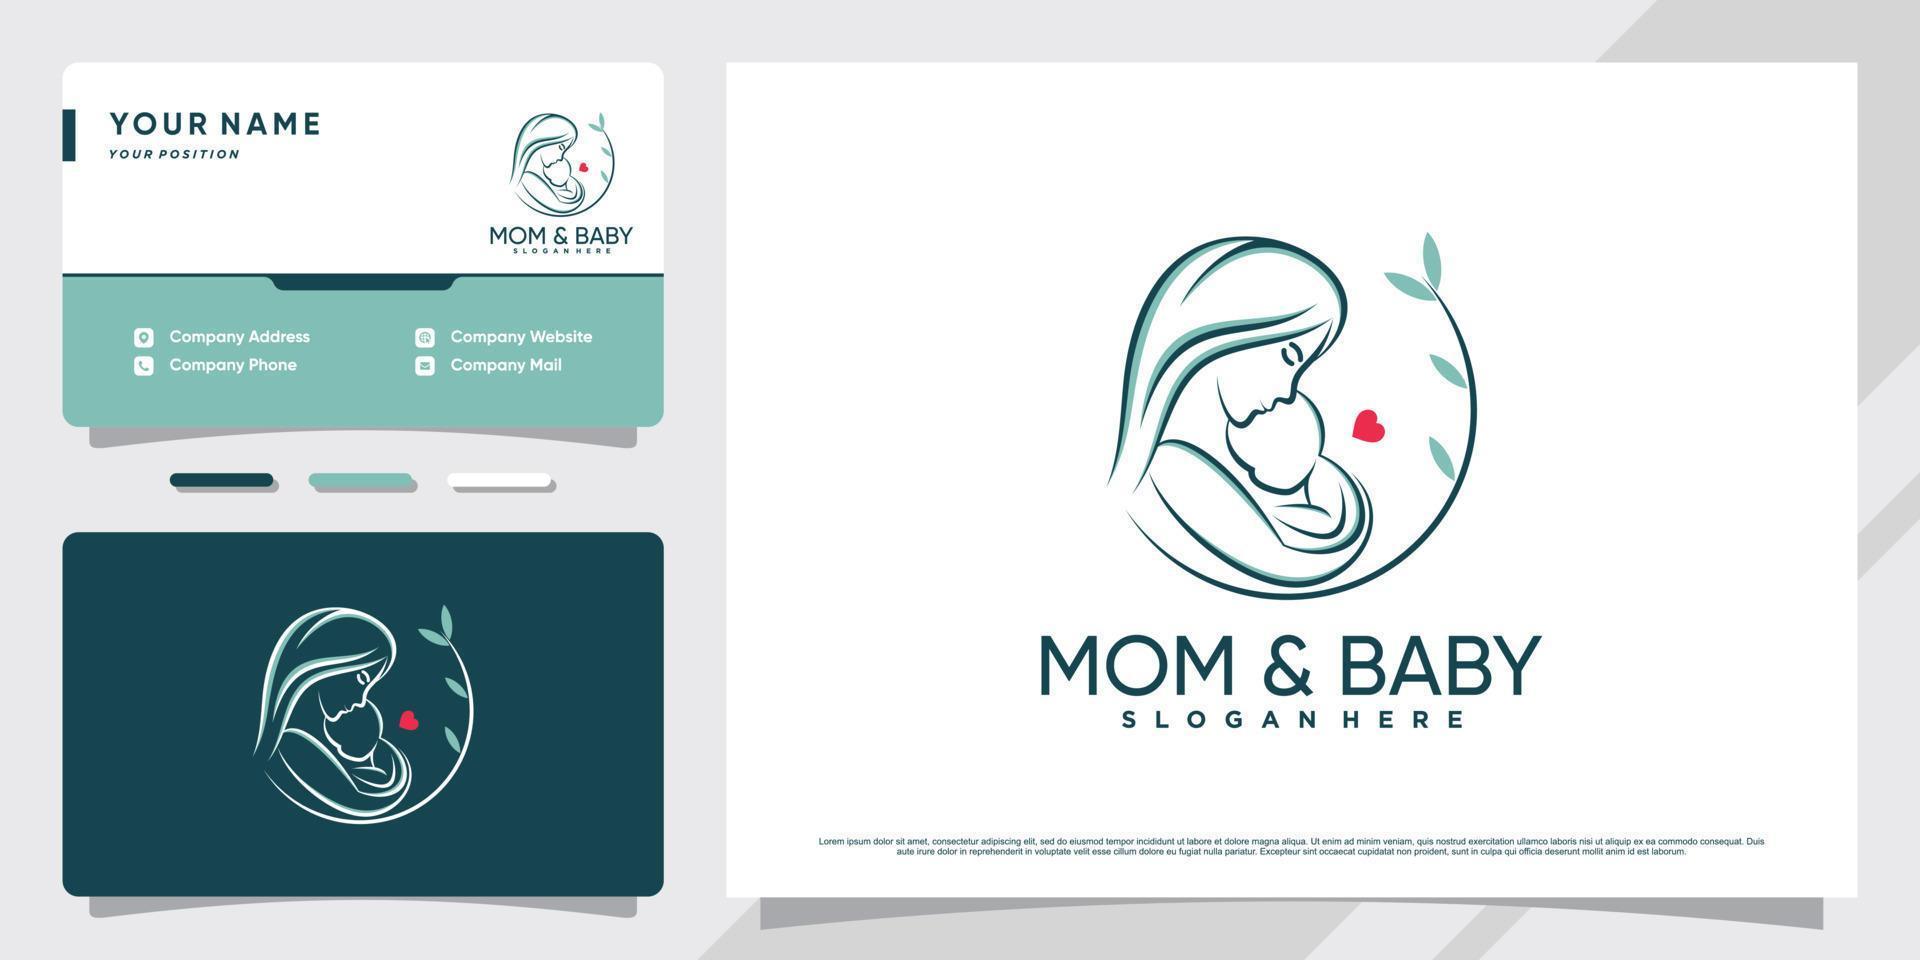 logo di mamma e bambino con elemento creativo e vettore premium di design del biglietto da visita